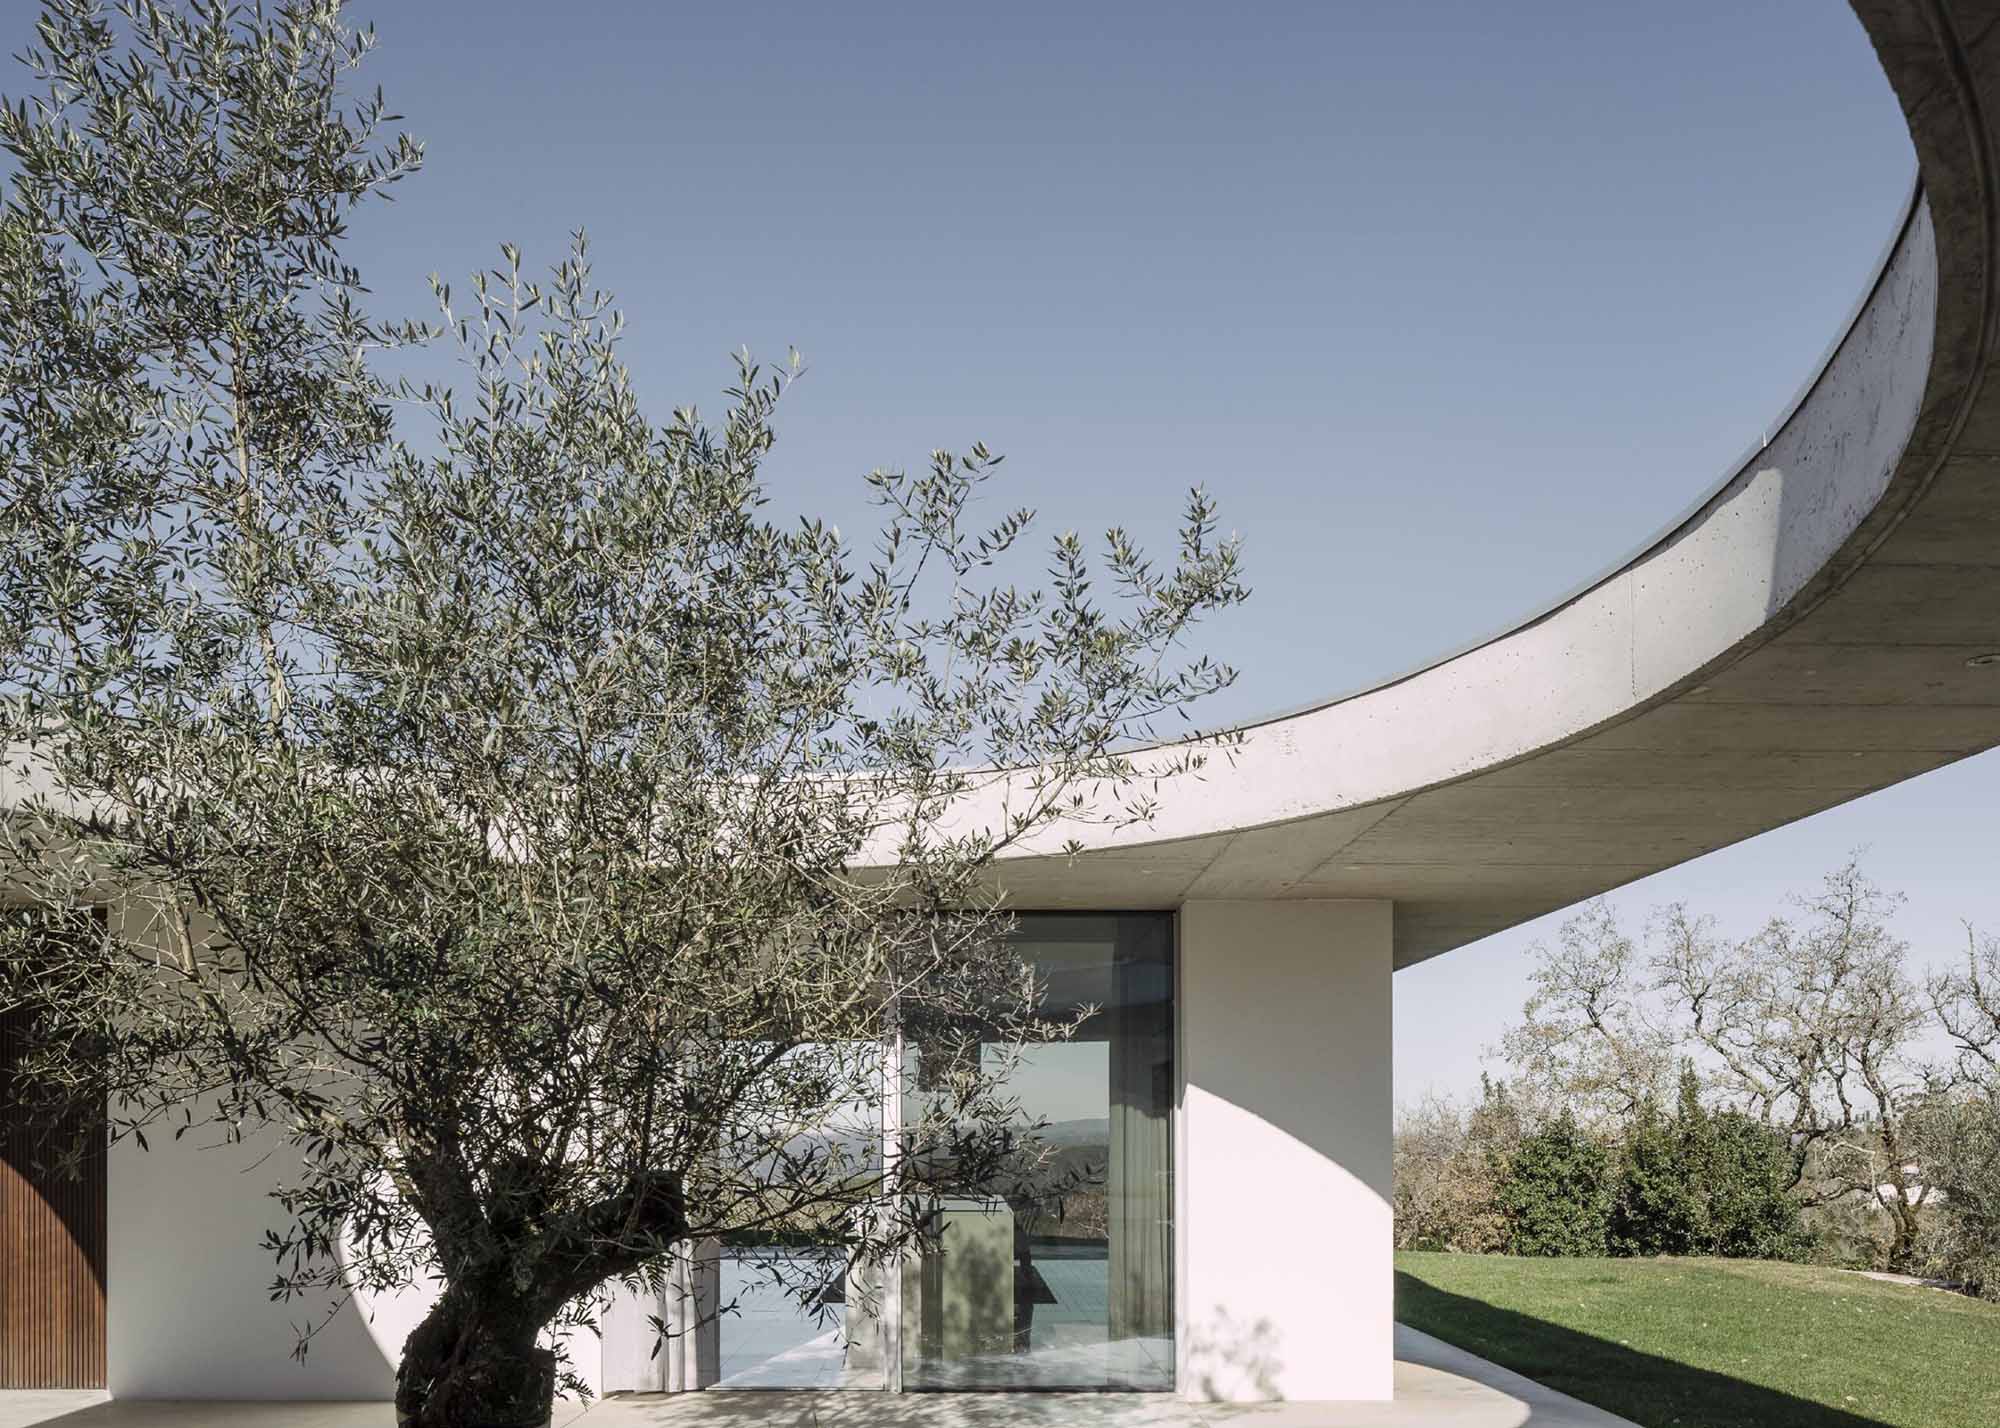 別墅設計,別墅設計案例,Bruno Dias,葡萄牙,國外別墅設計案例,別墅裝修,平層別墅,混凝土,野獸派風格,極簡風格